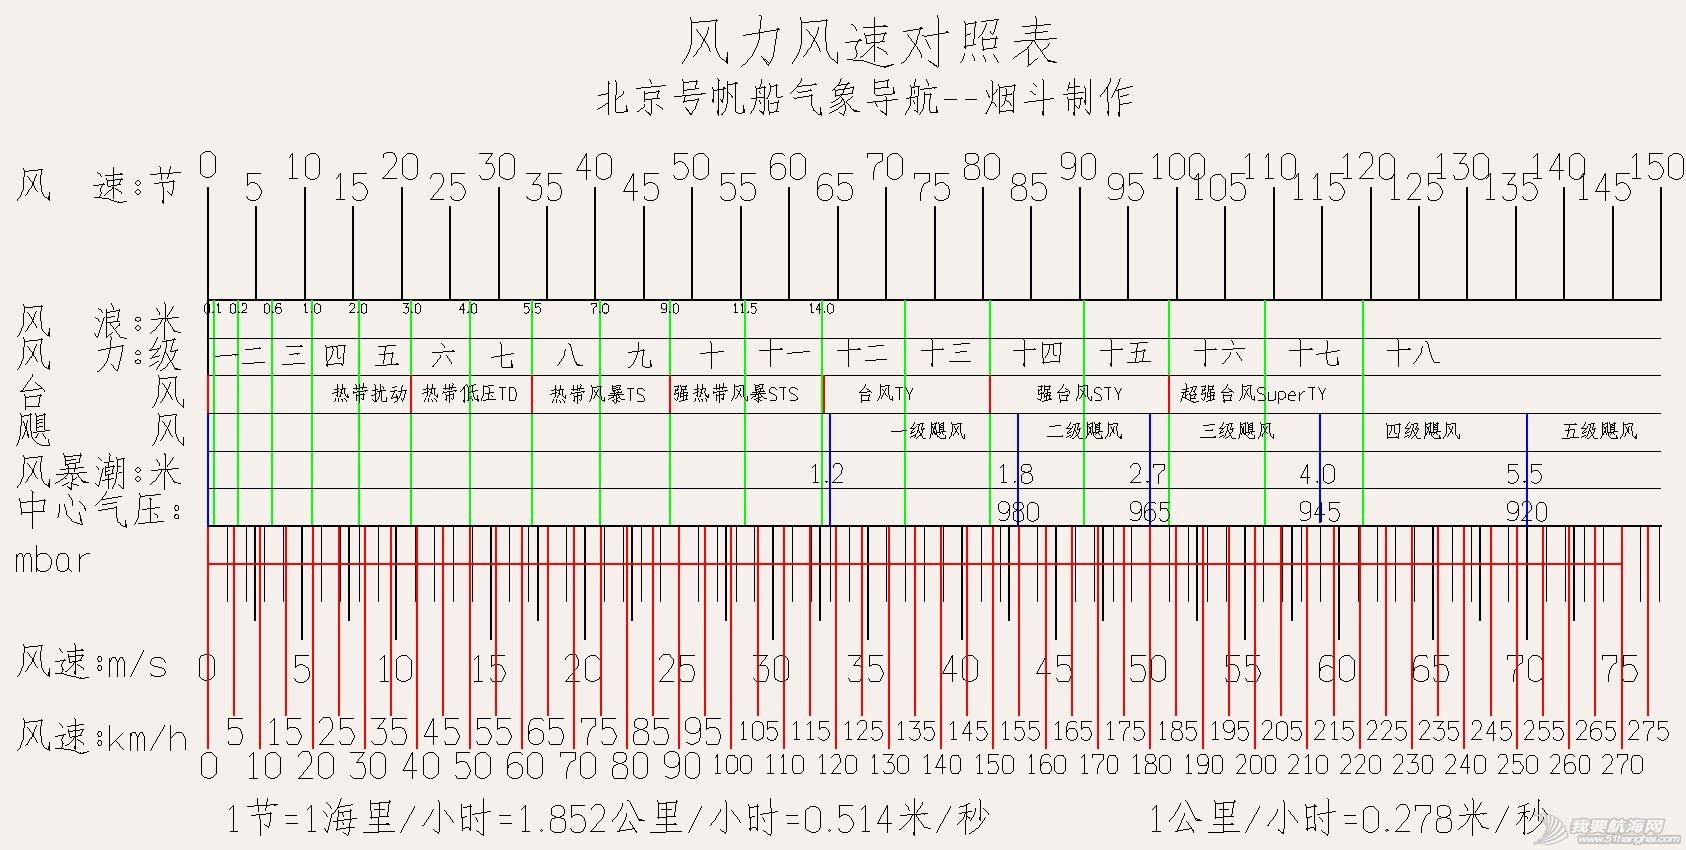 北京号气象导航--烟斗制作风力风速对照表